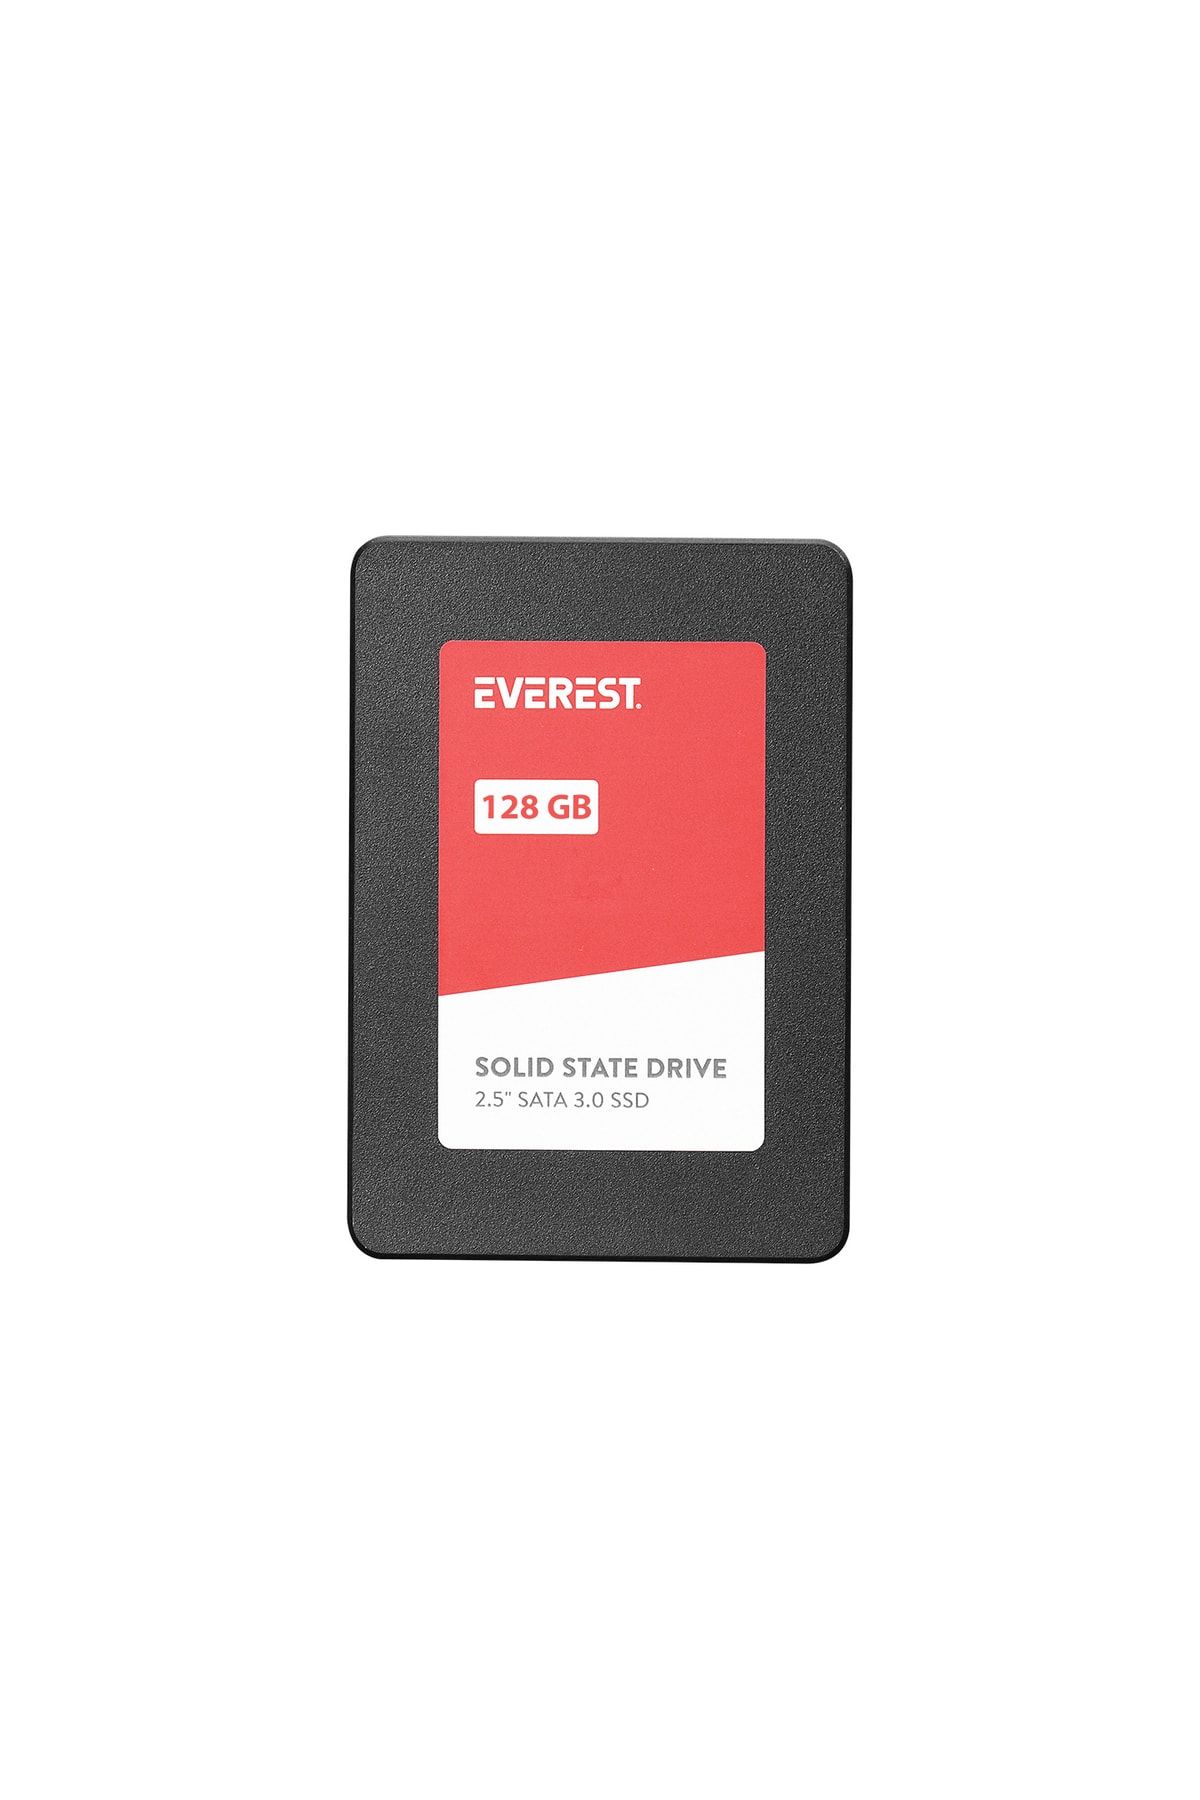 Everest Es128a 128gb 2.5 Inç Sata3.0 520mb/460mb 3d Nand Flash Ssd (solid State Drive)